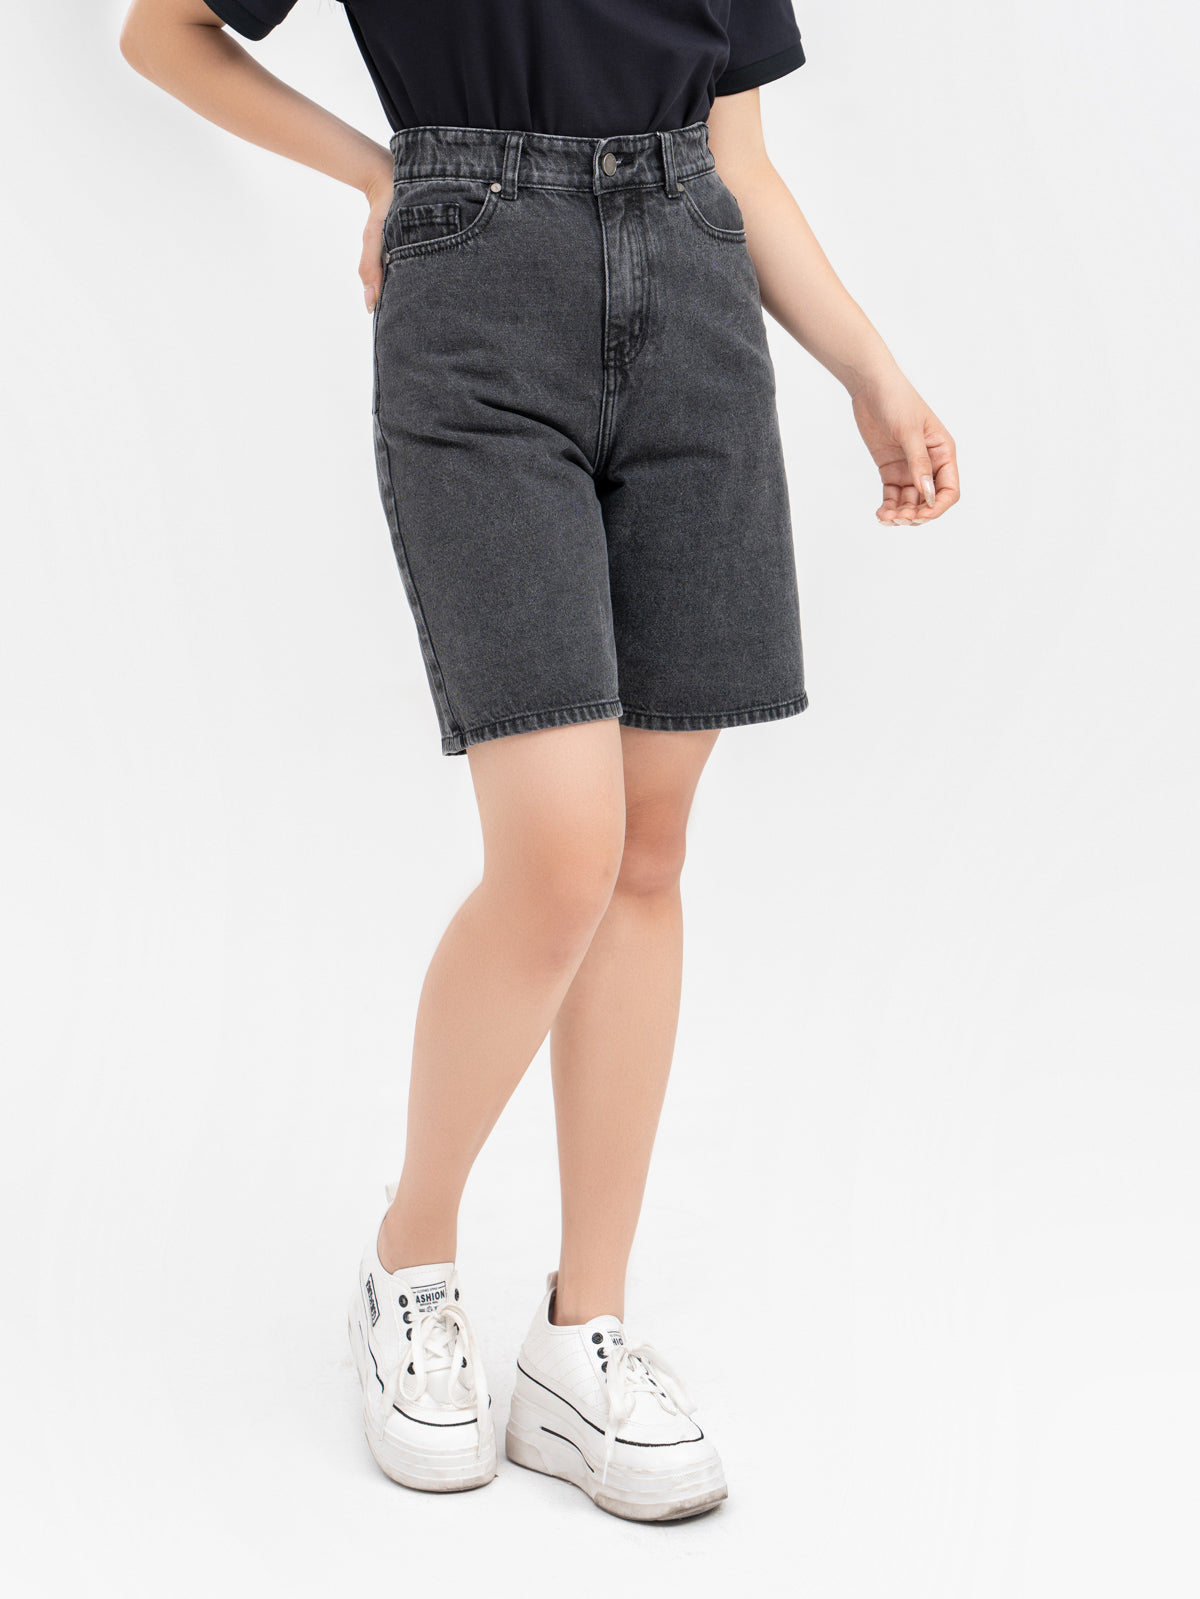 กางเกงขาสั้นผู้หญิงแบรนด์Yody เอวสูง ขากว้าง เนื้อเย็นที่มีสไตล์และอ่อนเยาว์ SJN3052